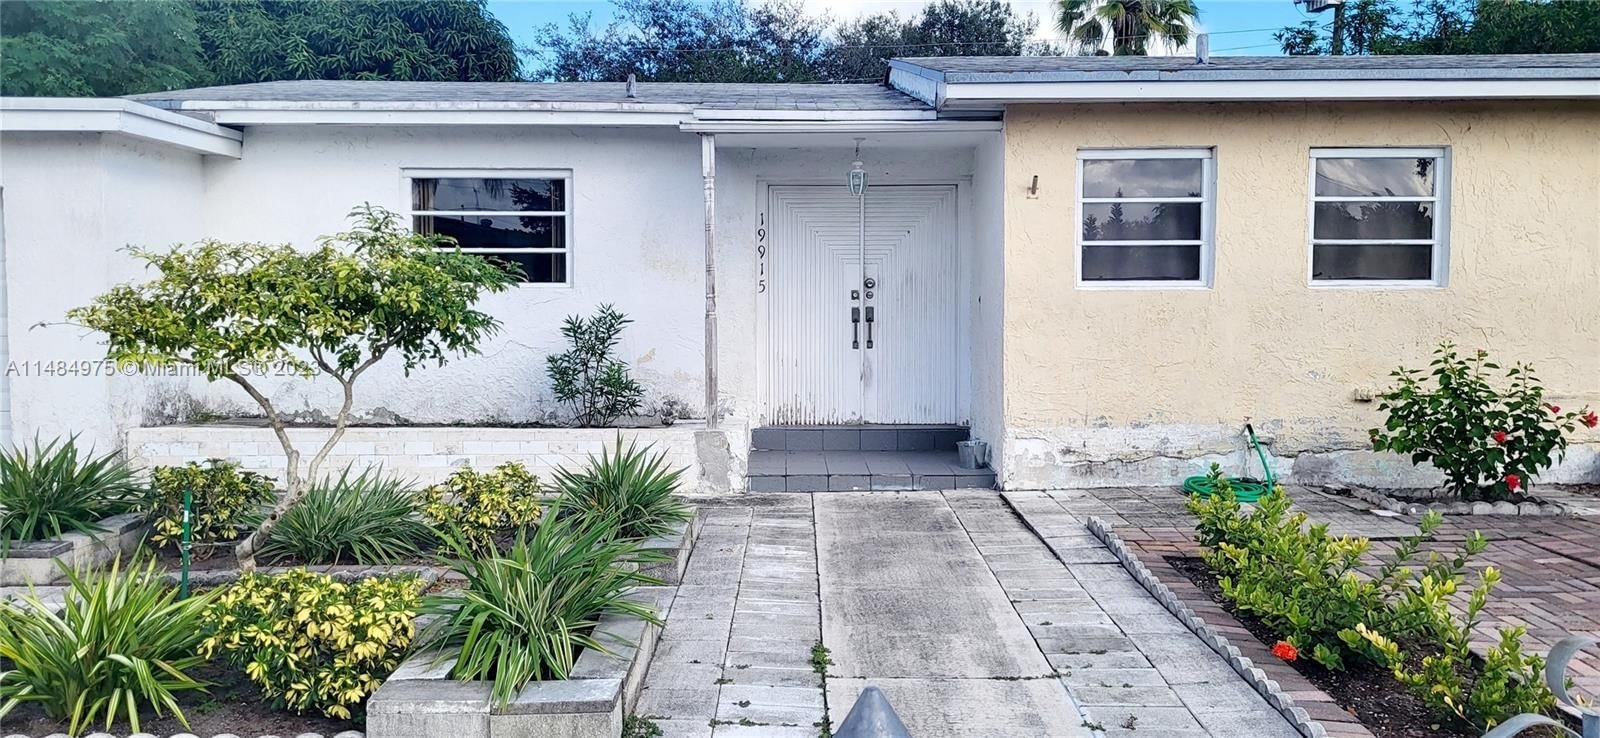 Real estate property located at 19915 14th Ct, Miami-Dade County, SEDRISH SUB, Miami, FL